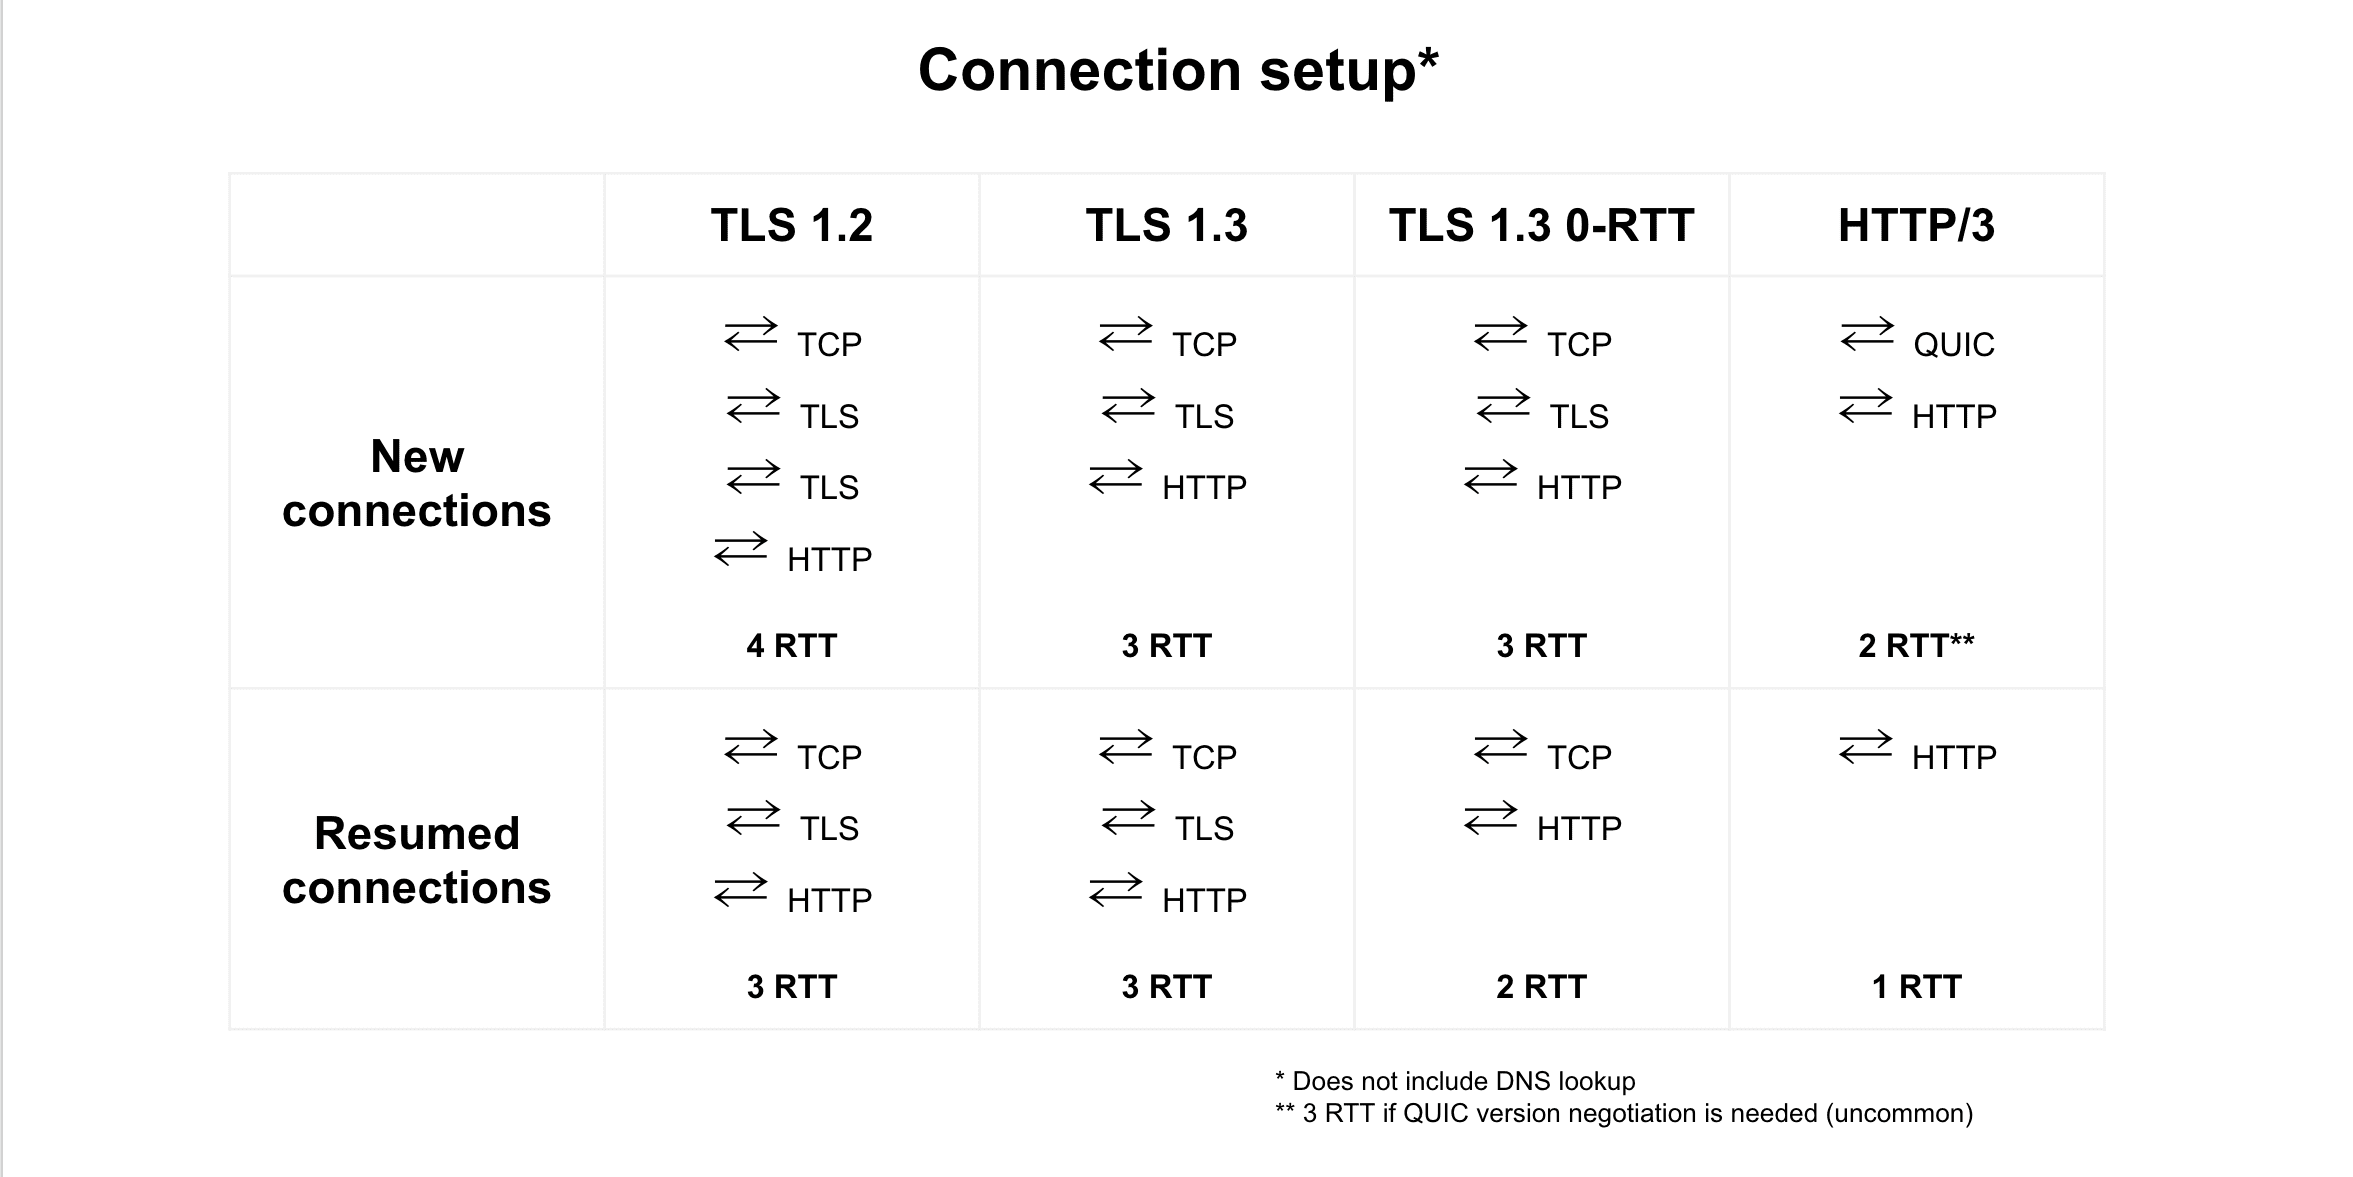 Comparación de la reanudación de la conexión entre TLS 1.2, TLS 1.3, TLS 1.3 0-RTT y HTTP/3